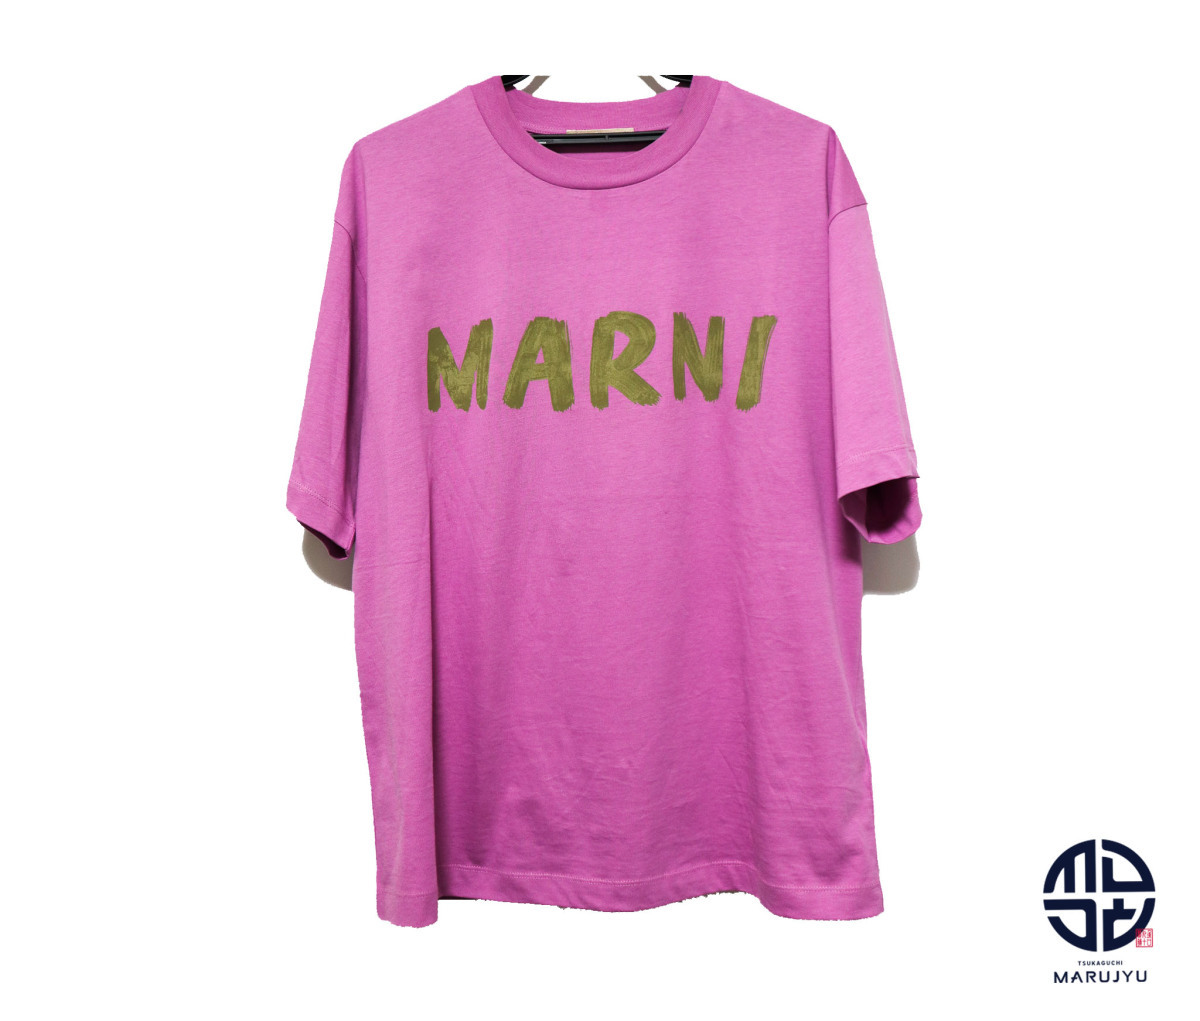 MARNI マルニ ロゴ Tシャツ レディース 半袖 服 アパレル サイズ38_画像1